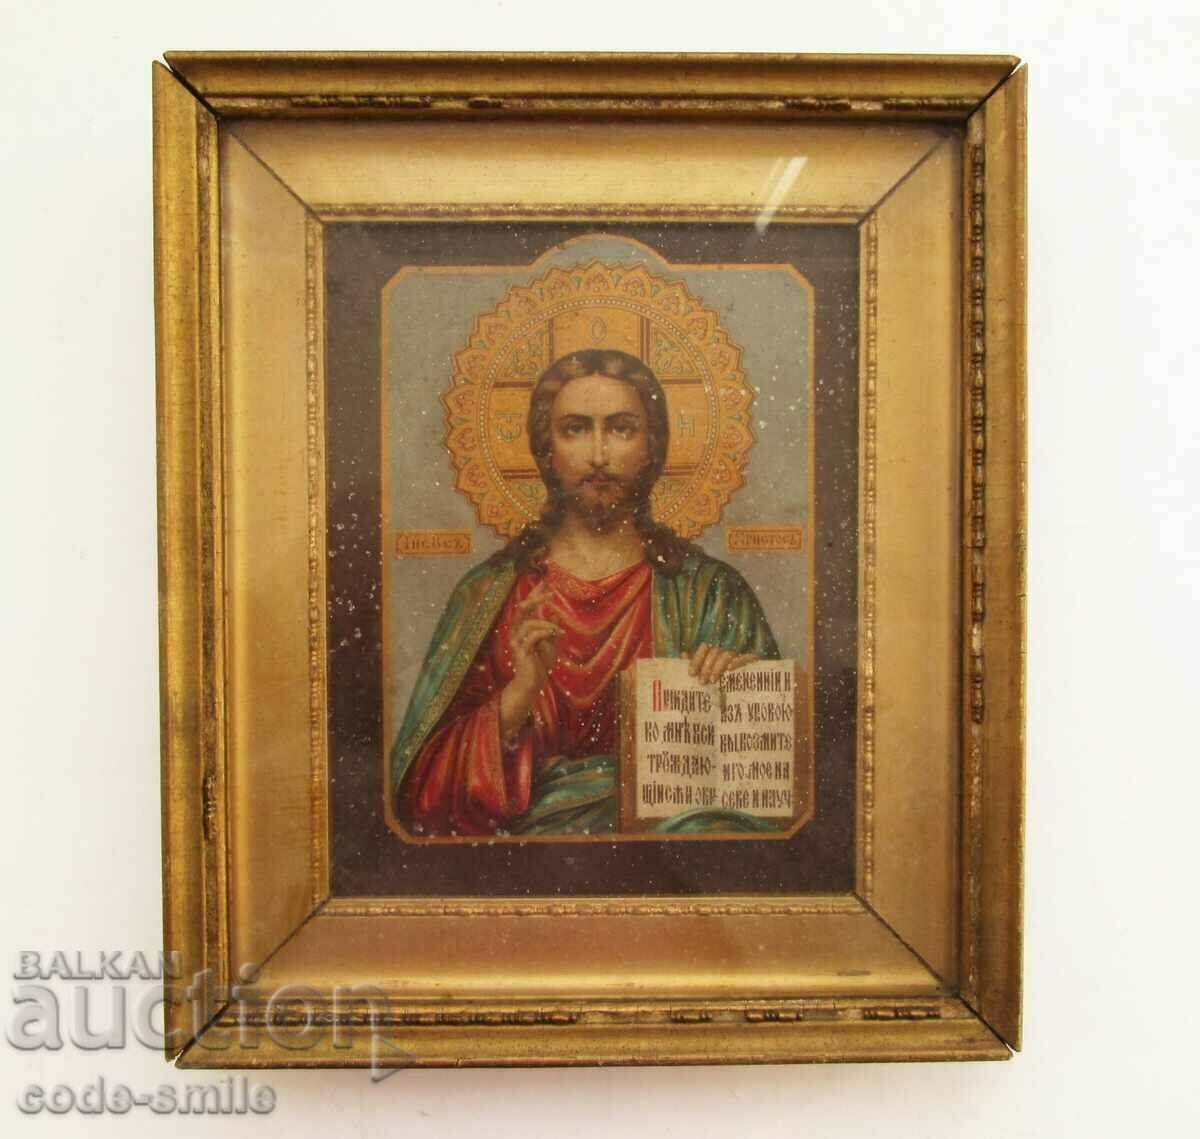 Veche icoană rusă țaristă Iisus Hristos litografia secolului al XIX-lea